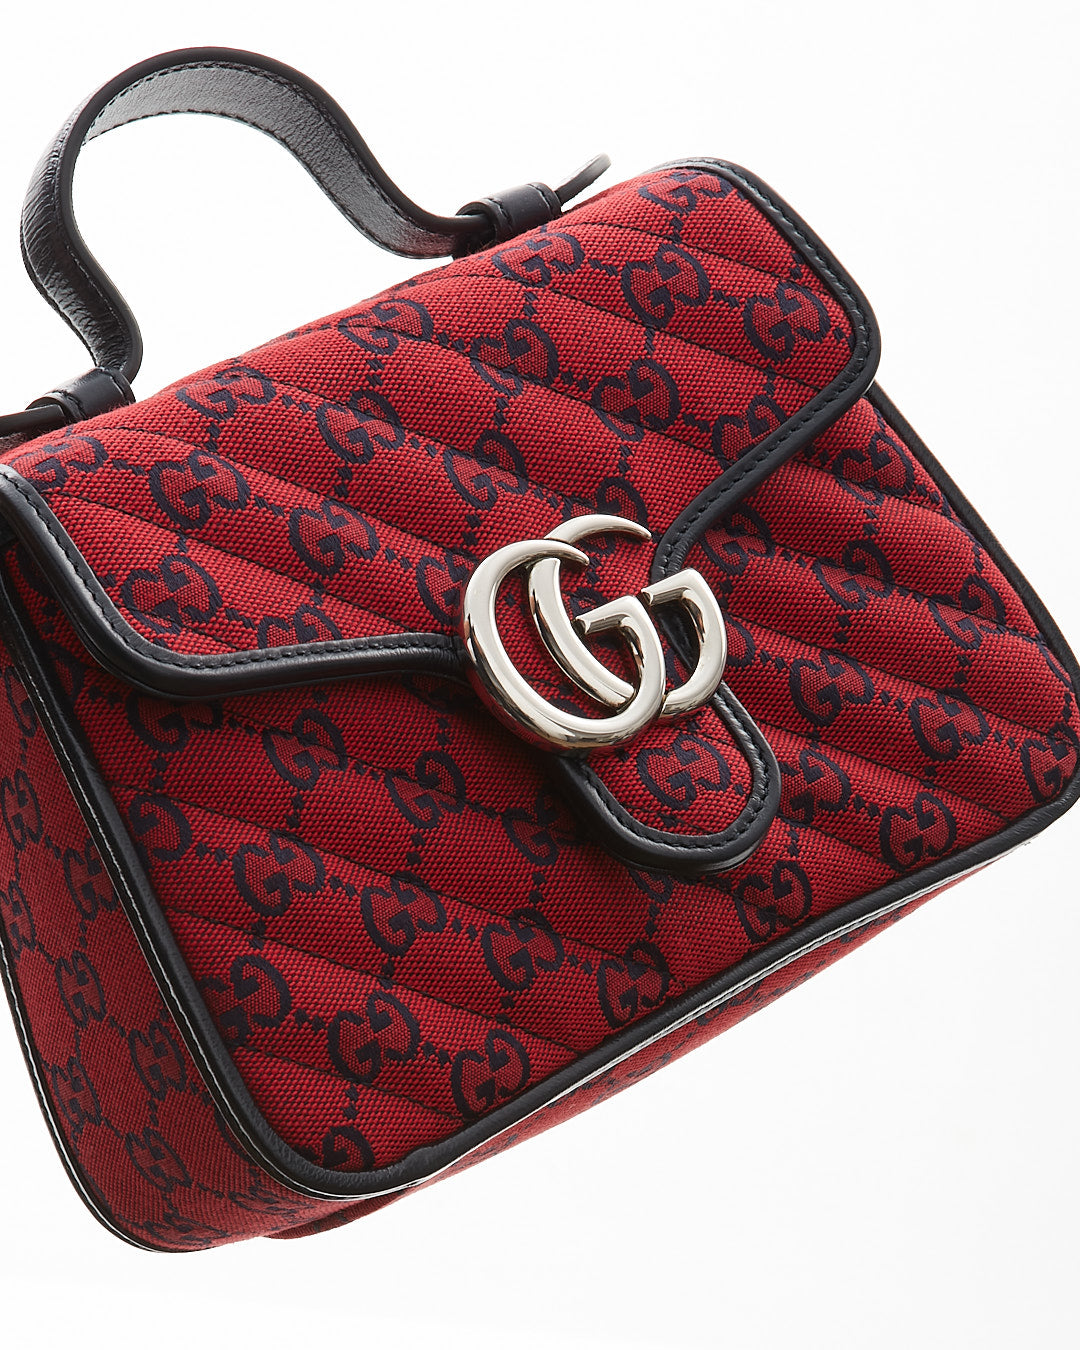 Gucci ÉDITION LIMITÉE Mini cartable rouge et noir GG Monogram Marmont